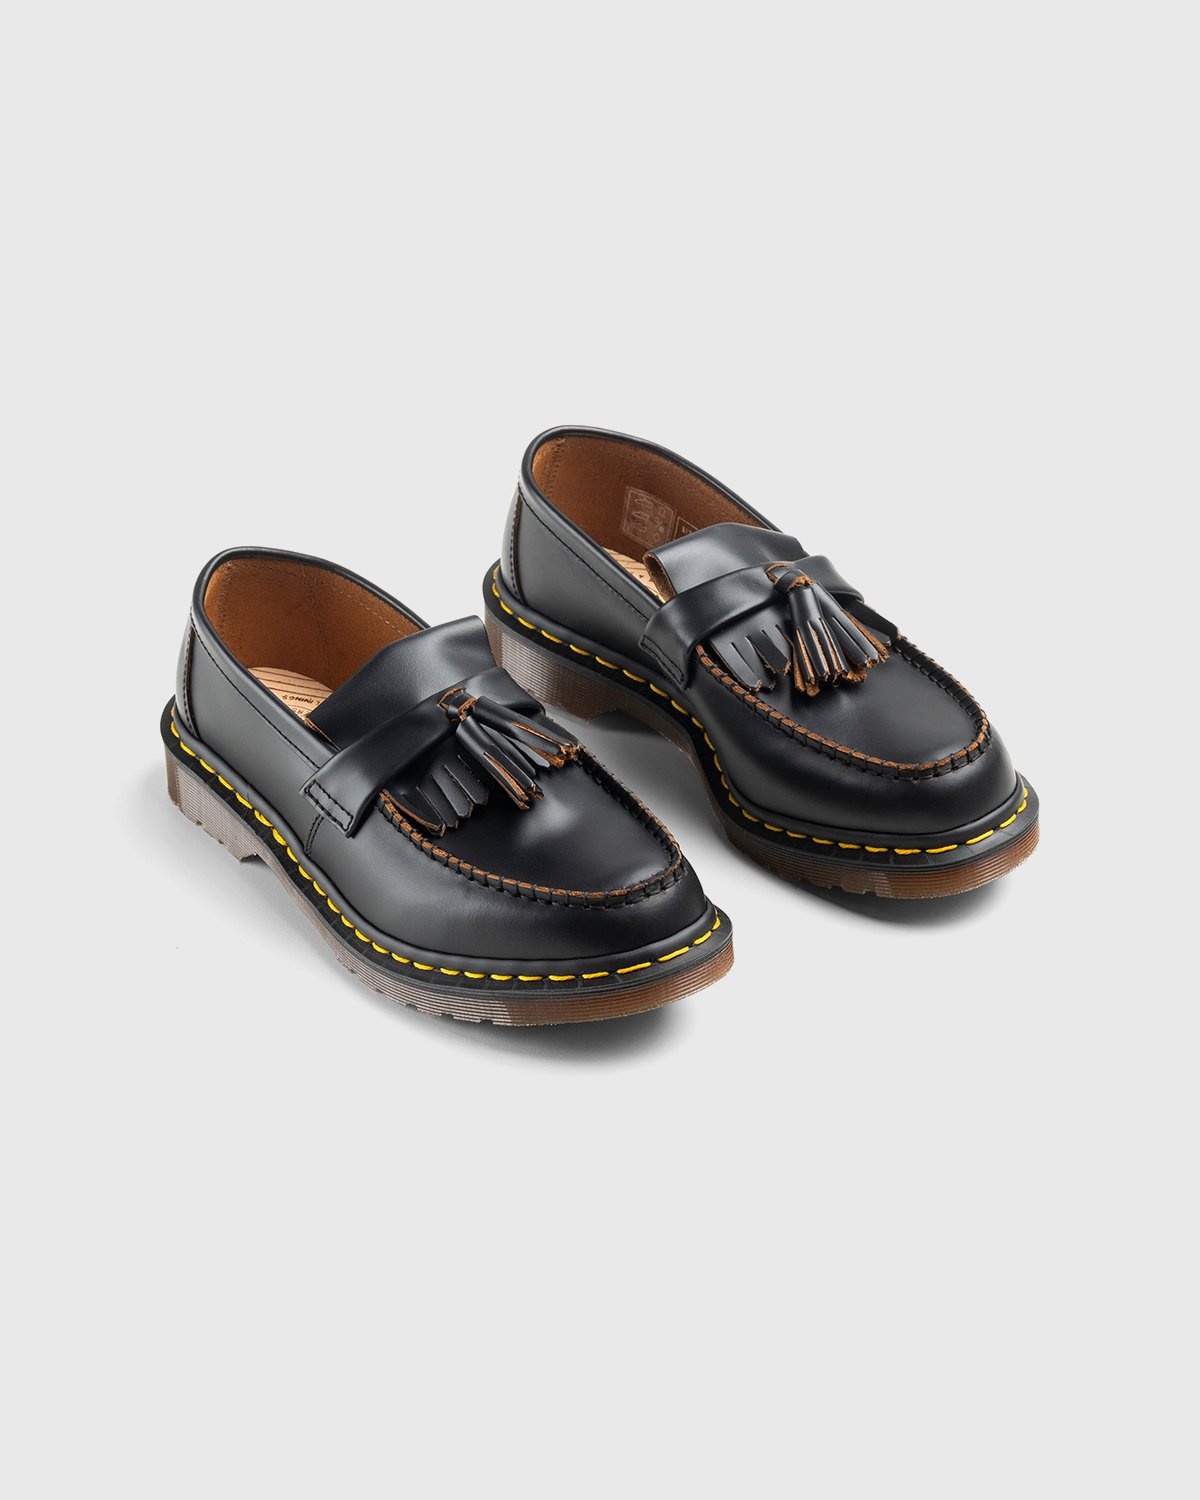 Dr. Martens – Adrian Black Quilon - Shoes - Black - Image 3